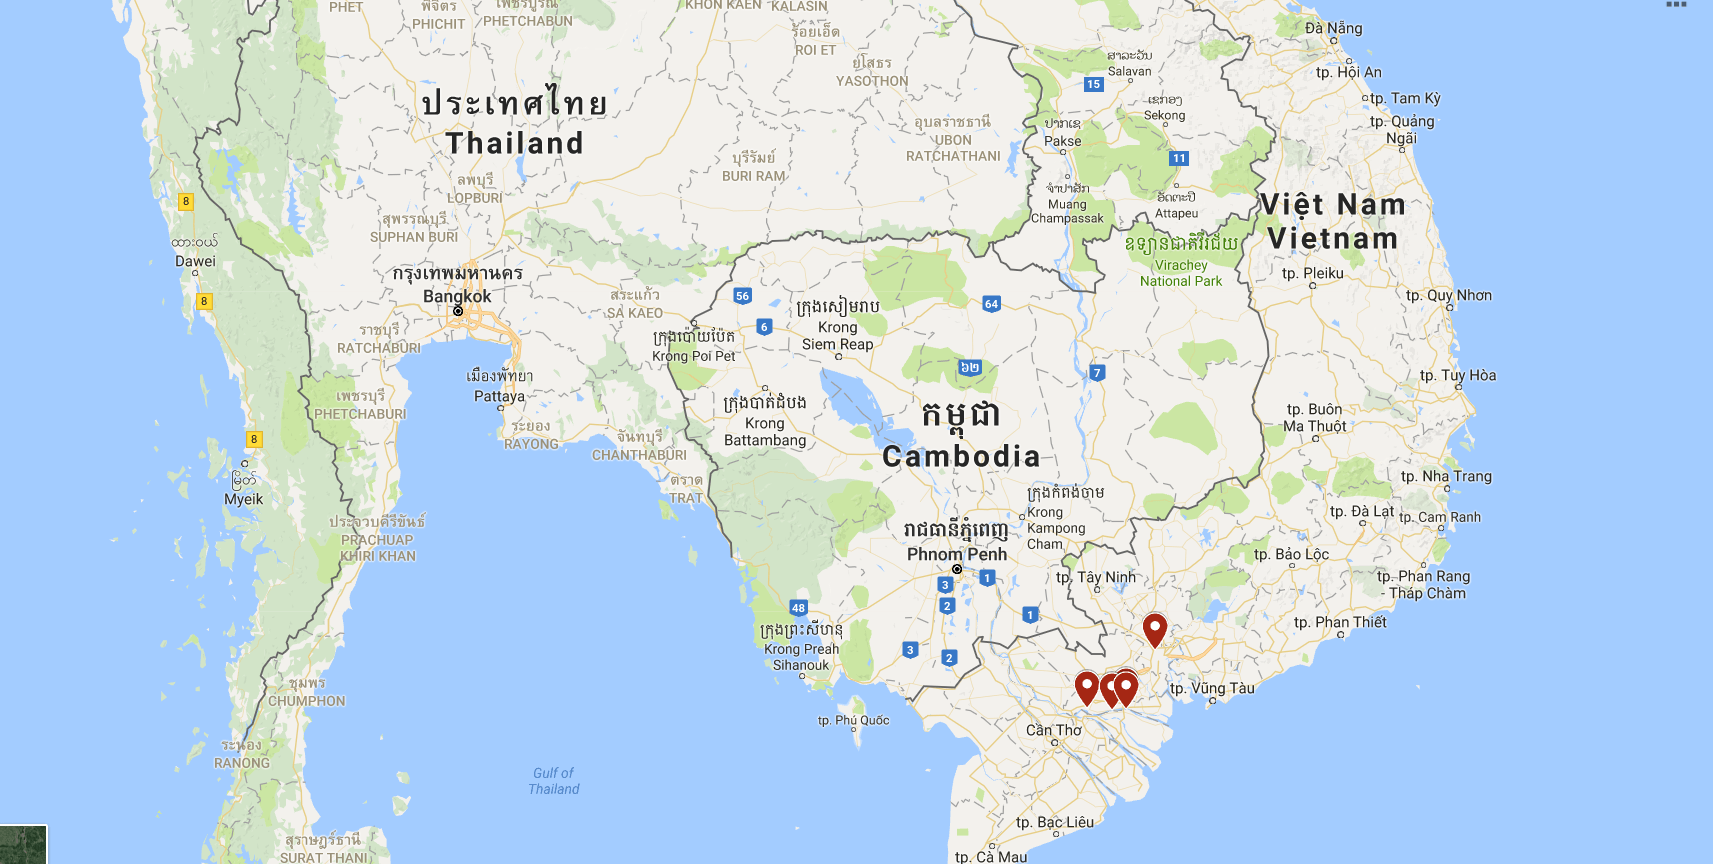 Vietnam, Ben Pre